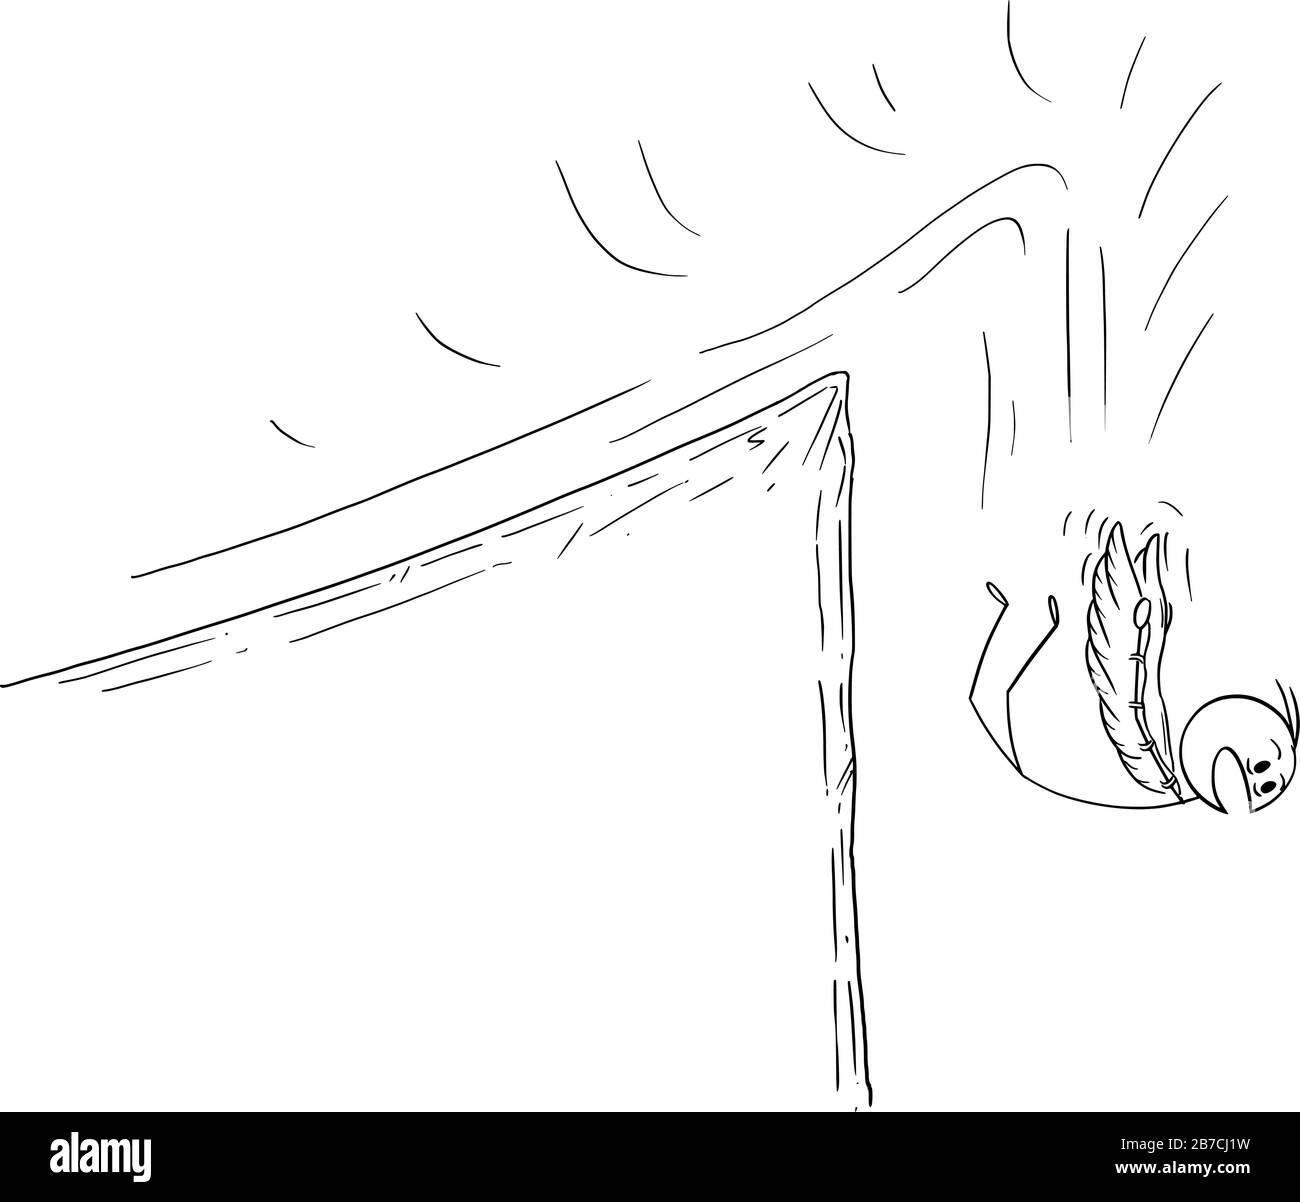 Vector Cartoon Stick Figure Zeichnung konzeptuelle Illustration von Mann oder Geschäftsmann versucht, mit Flügeln zu fliegen, aber von einer Klippe zu fallen. Geschäftskonzept von Erfolg und Misserfolg. Stock Vektor